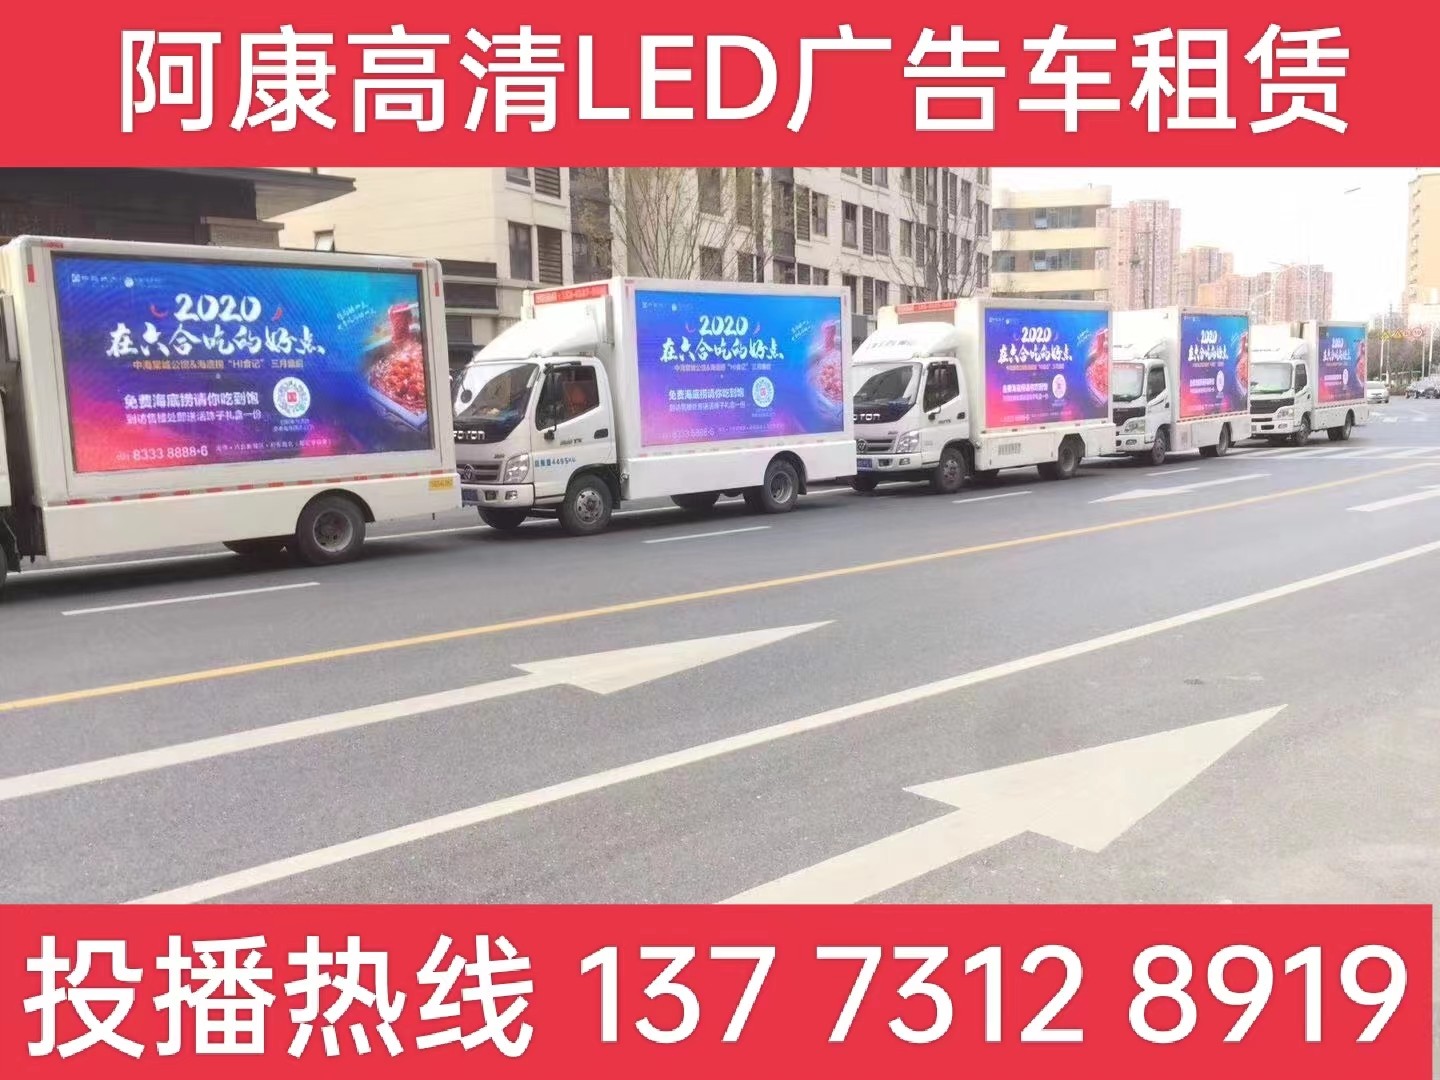 盱眙县宣传车出租-海底捞LED广告